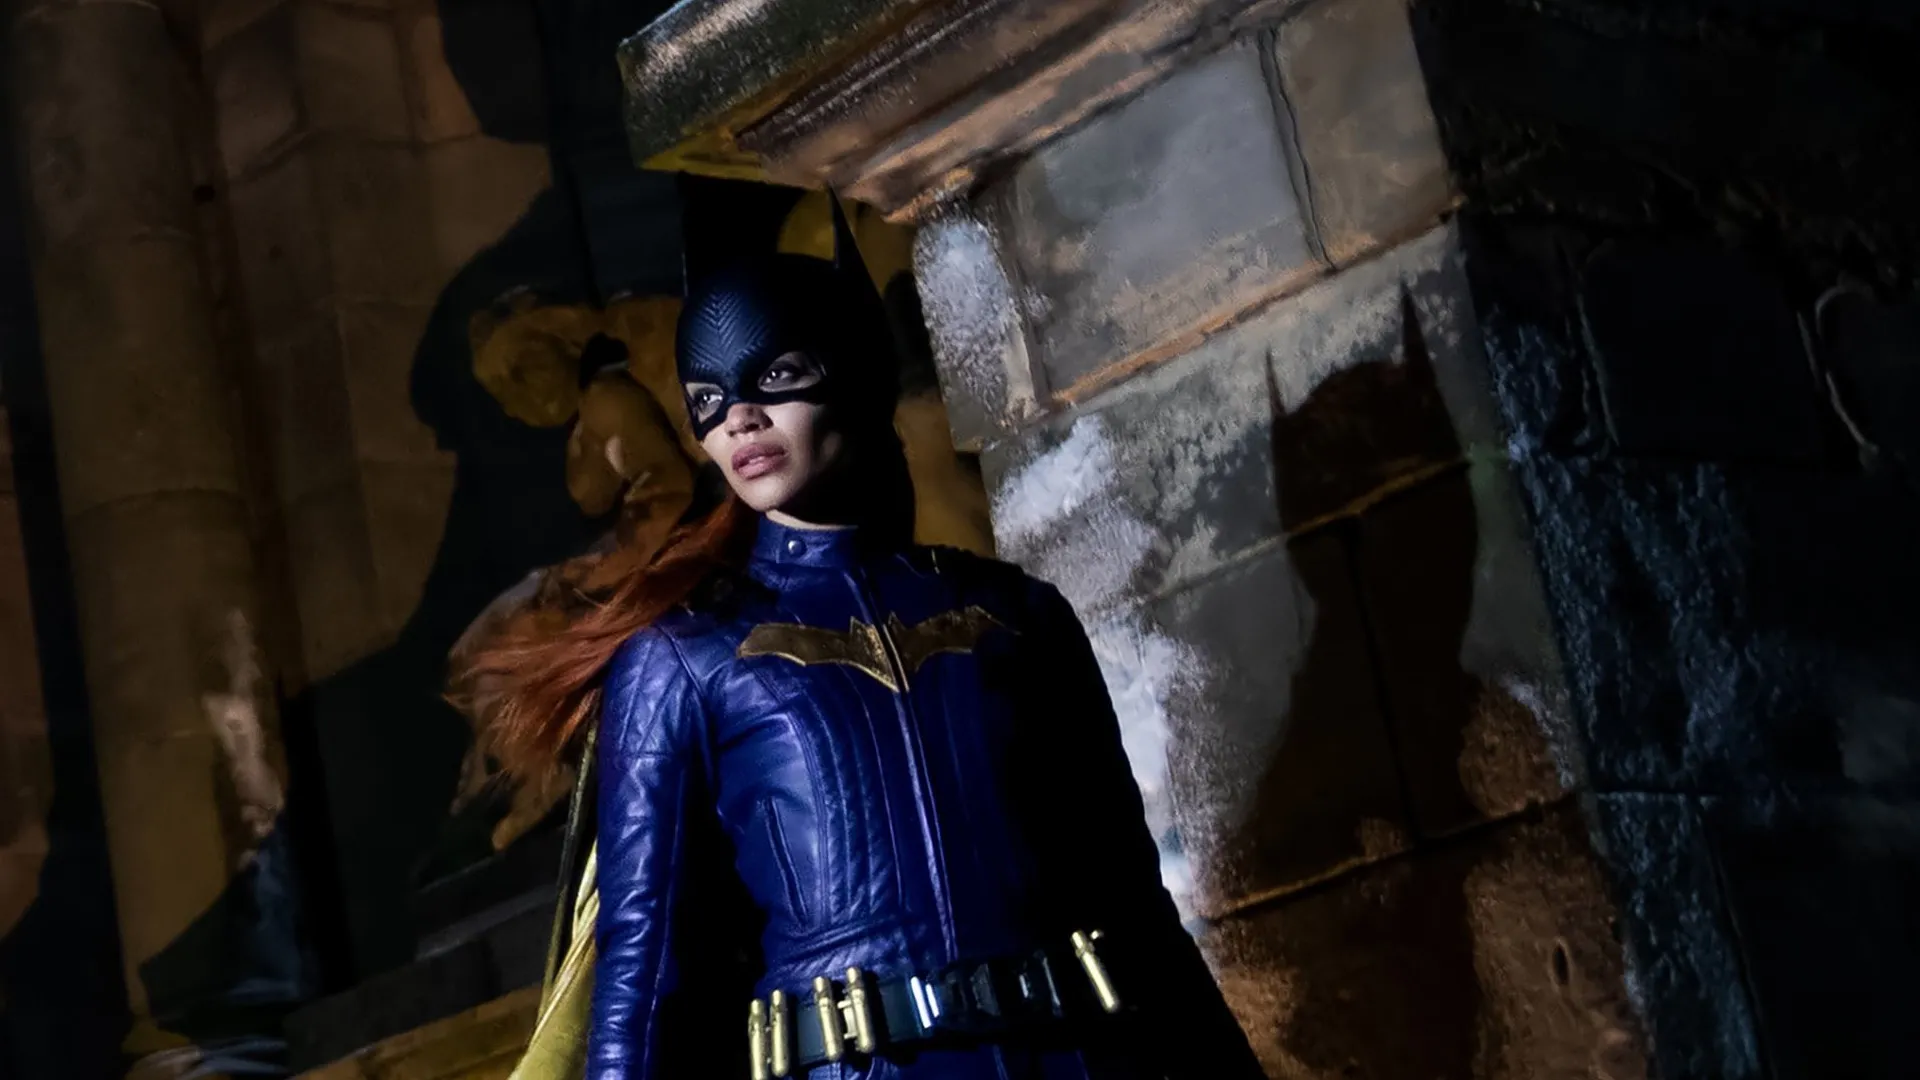 Warner Bros. won't release 'Bat Girl' movie